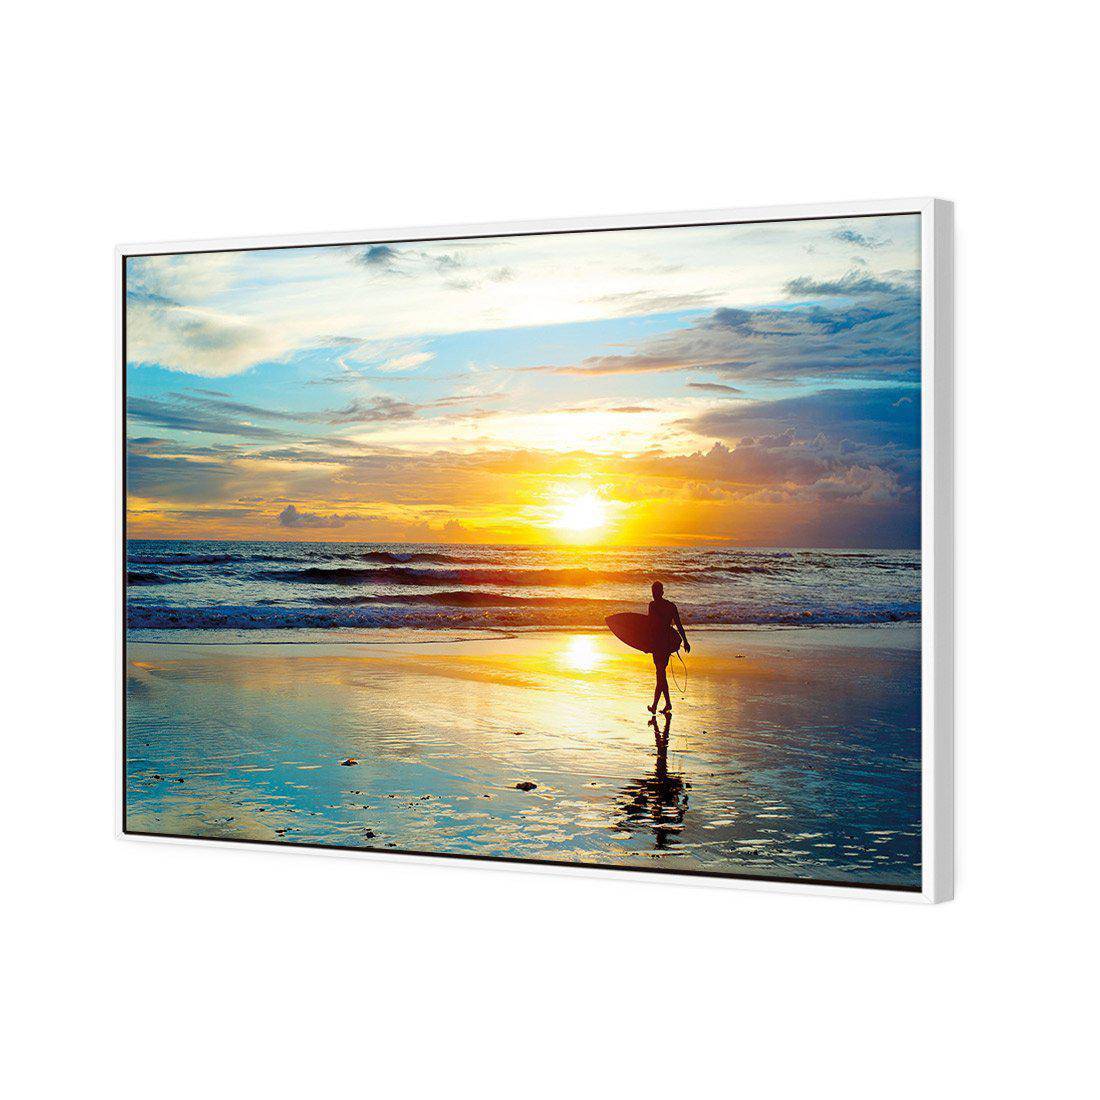 Sunset Surf Canvas Art-Canvas-Wall Art Designs-45x30cm-Canvas - White Frame-Wall Art Designs